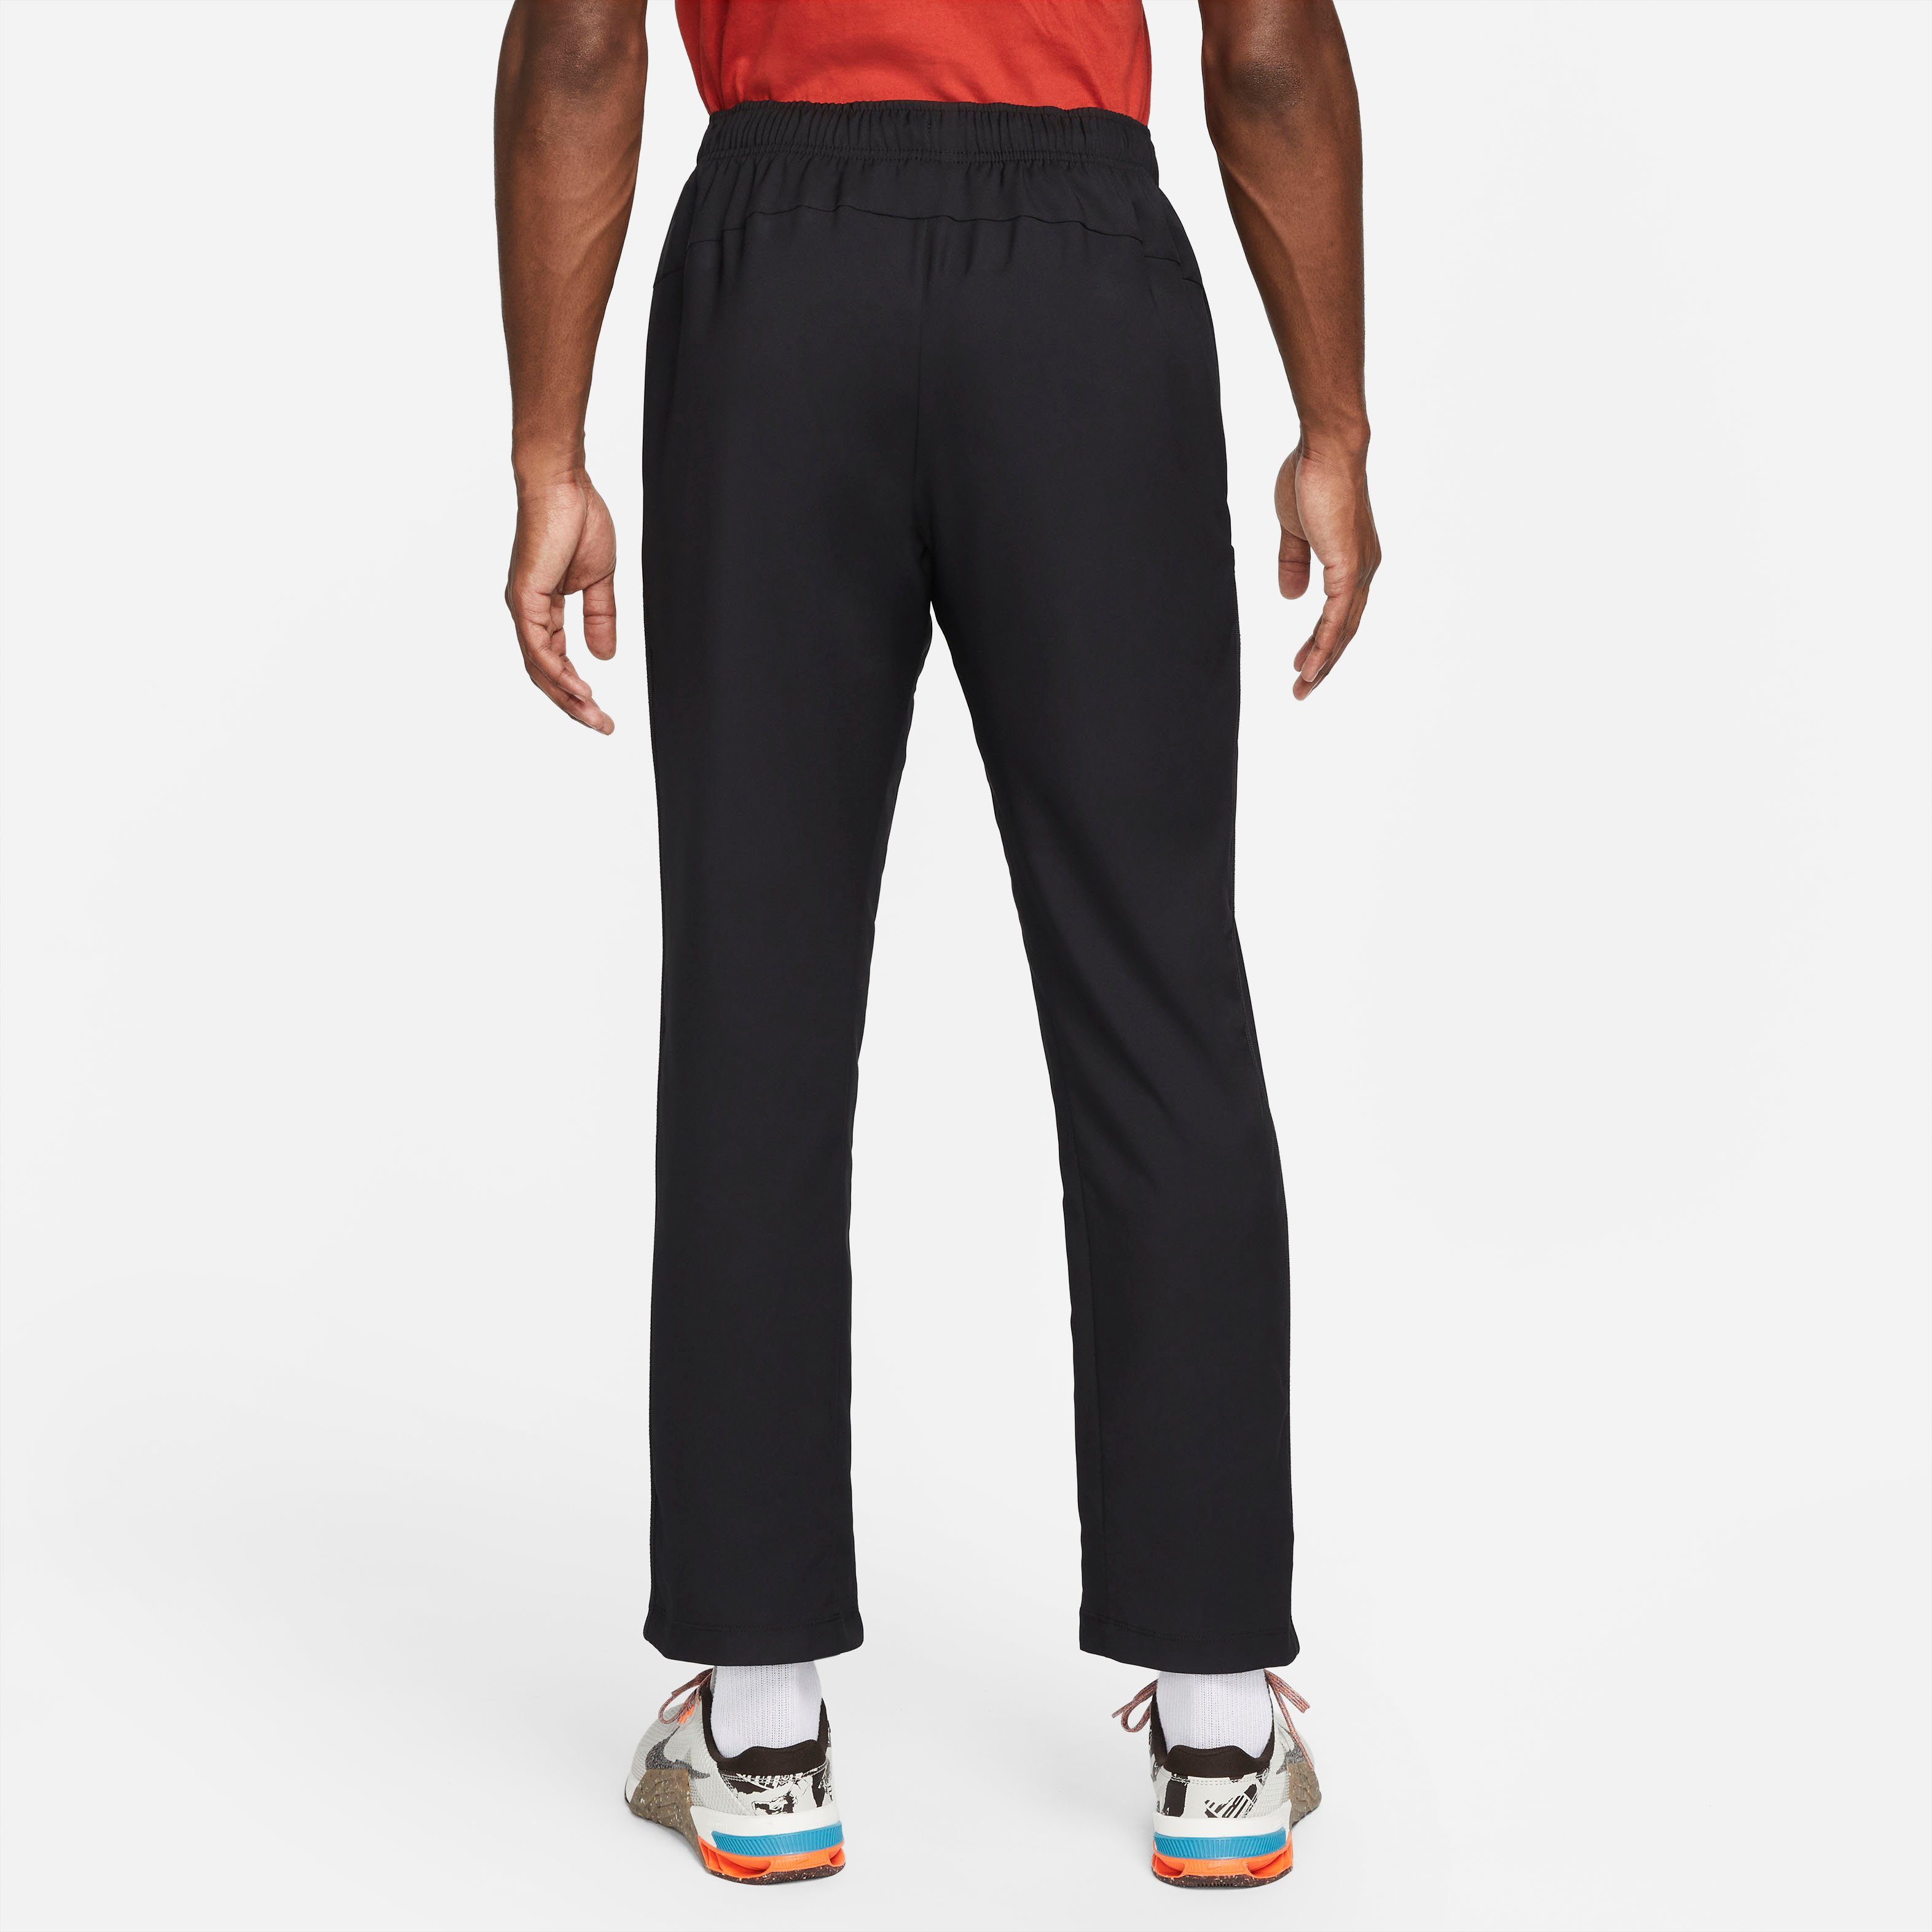 Men's Team Nike Pants Dri-FIT Sporthose Training Woven